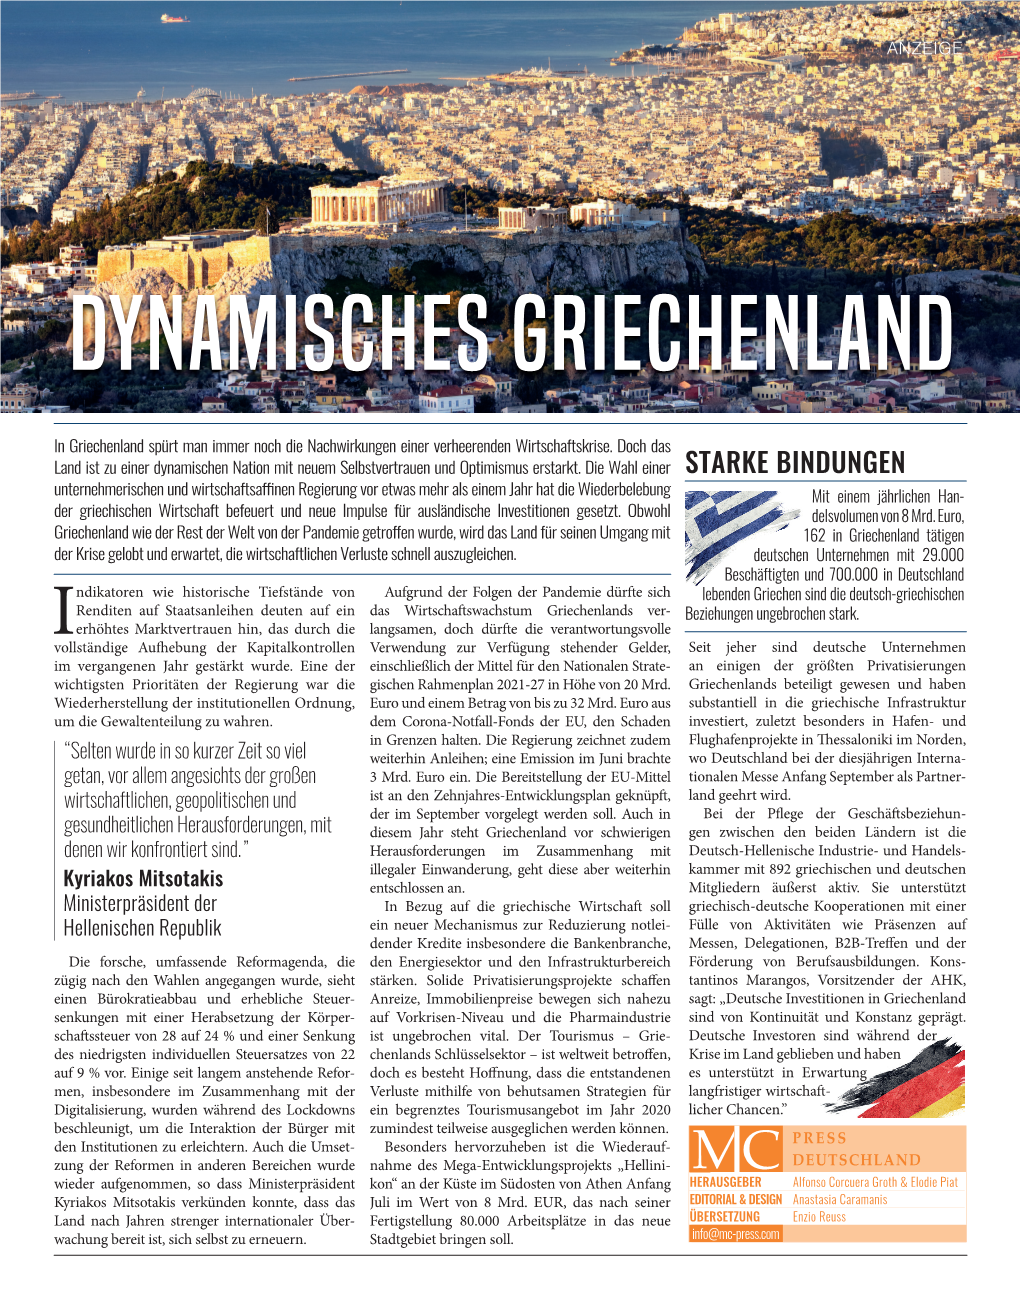 Dynamic Greece 2019 German.Indd